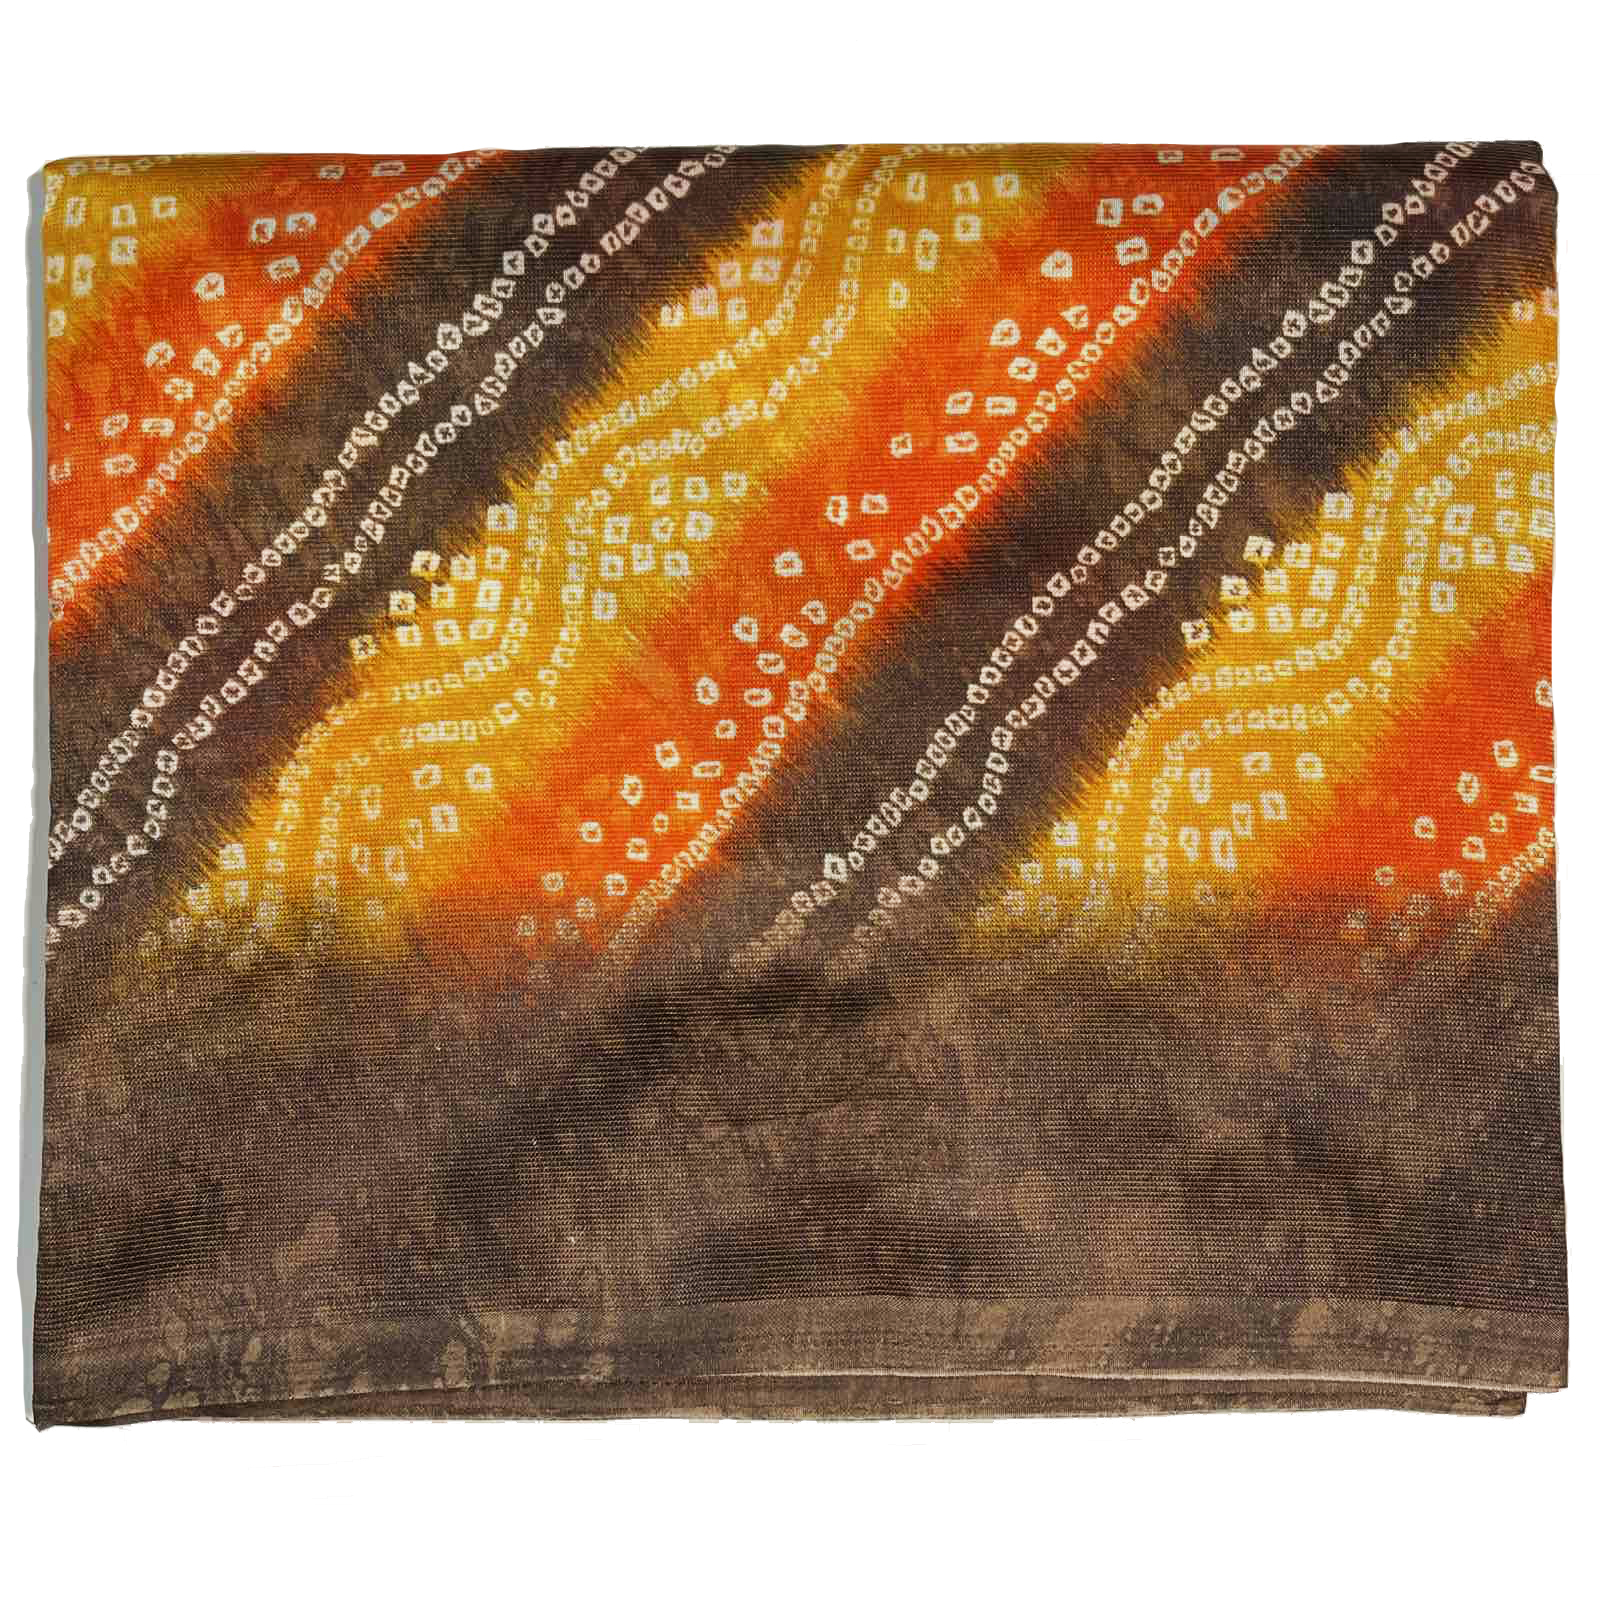 Сари ISHITA HOUSE, Kareena, с печатным принтом БАНДХАНИ, цвет КОРИЧНЕВЫЙ (Size: Onesize, с отрезом для блузы), 1 шт.